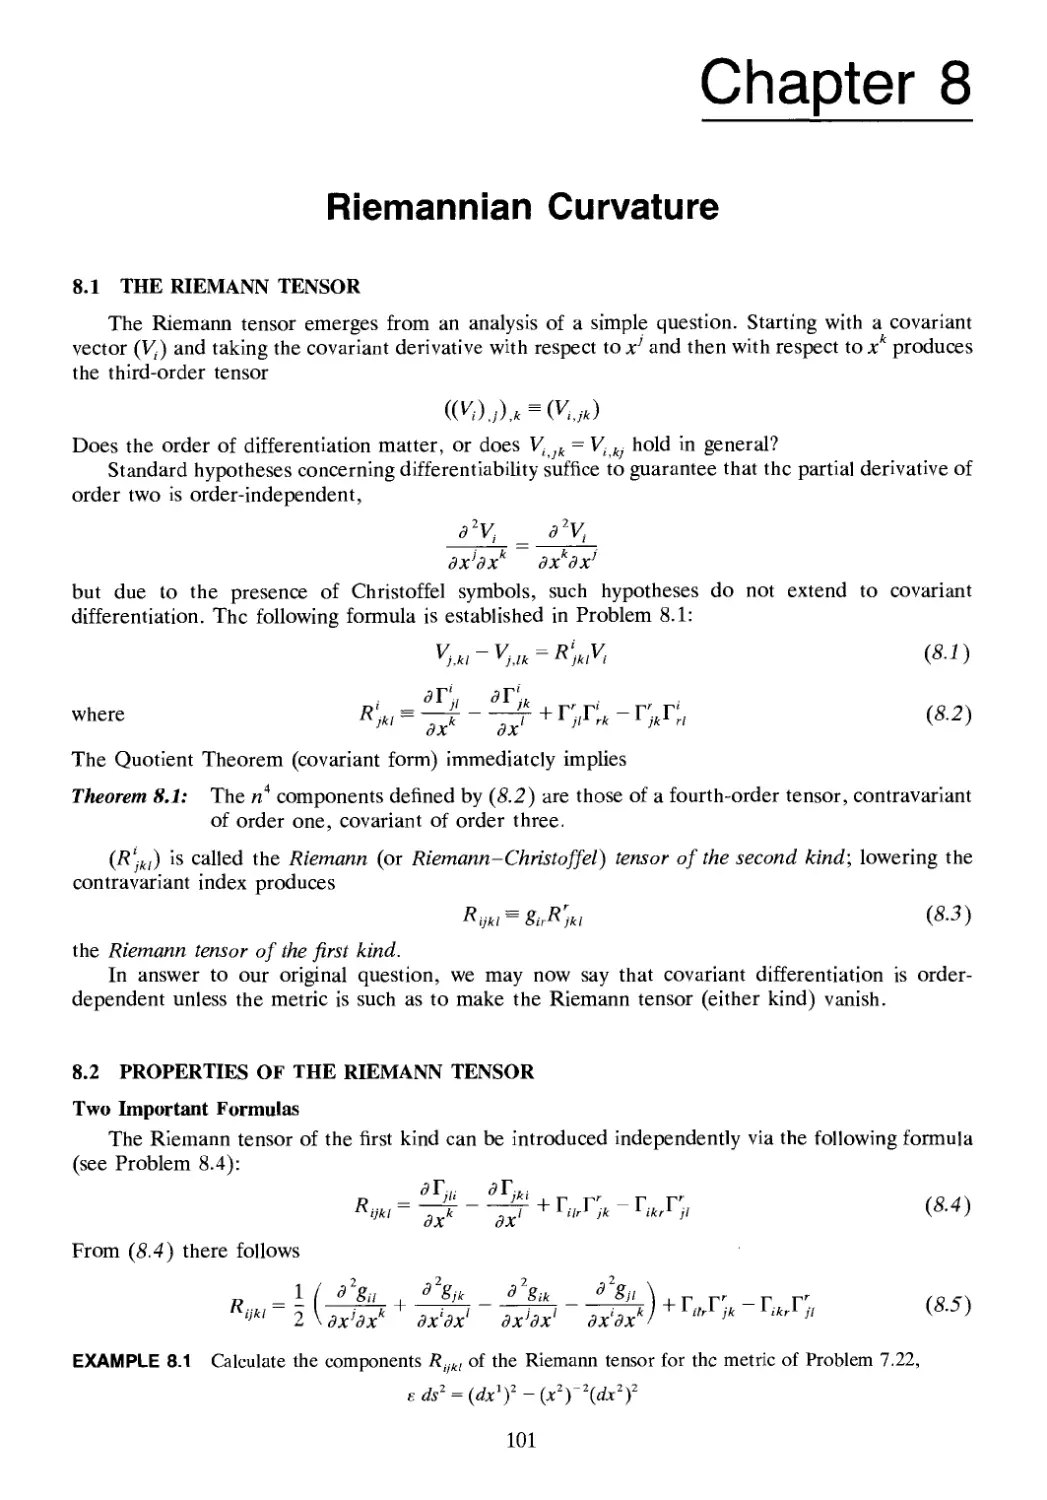 Chapter 8 RIEMANNIAN CURVATURE
8.2 Properties of the Riemann Tensor